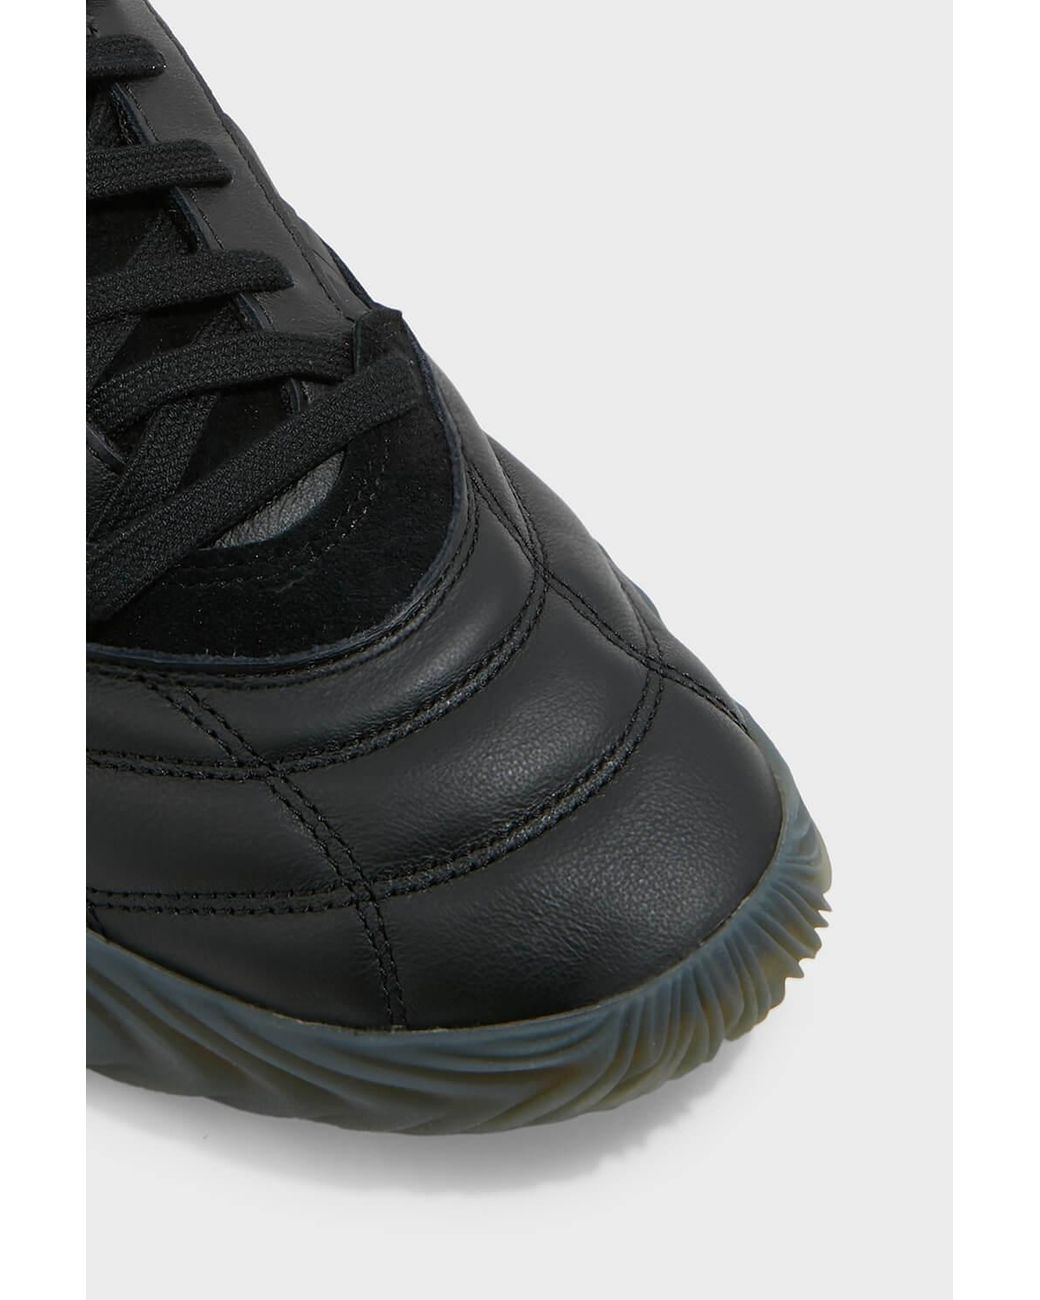 adidas Originals Sobakov 2.0 Leather 